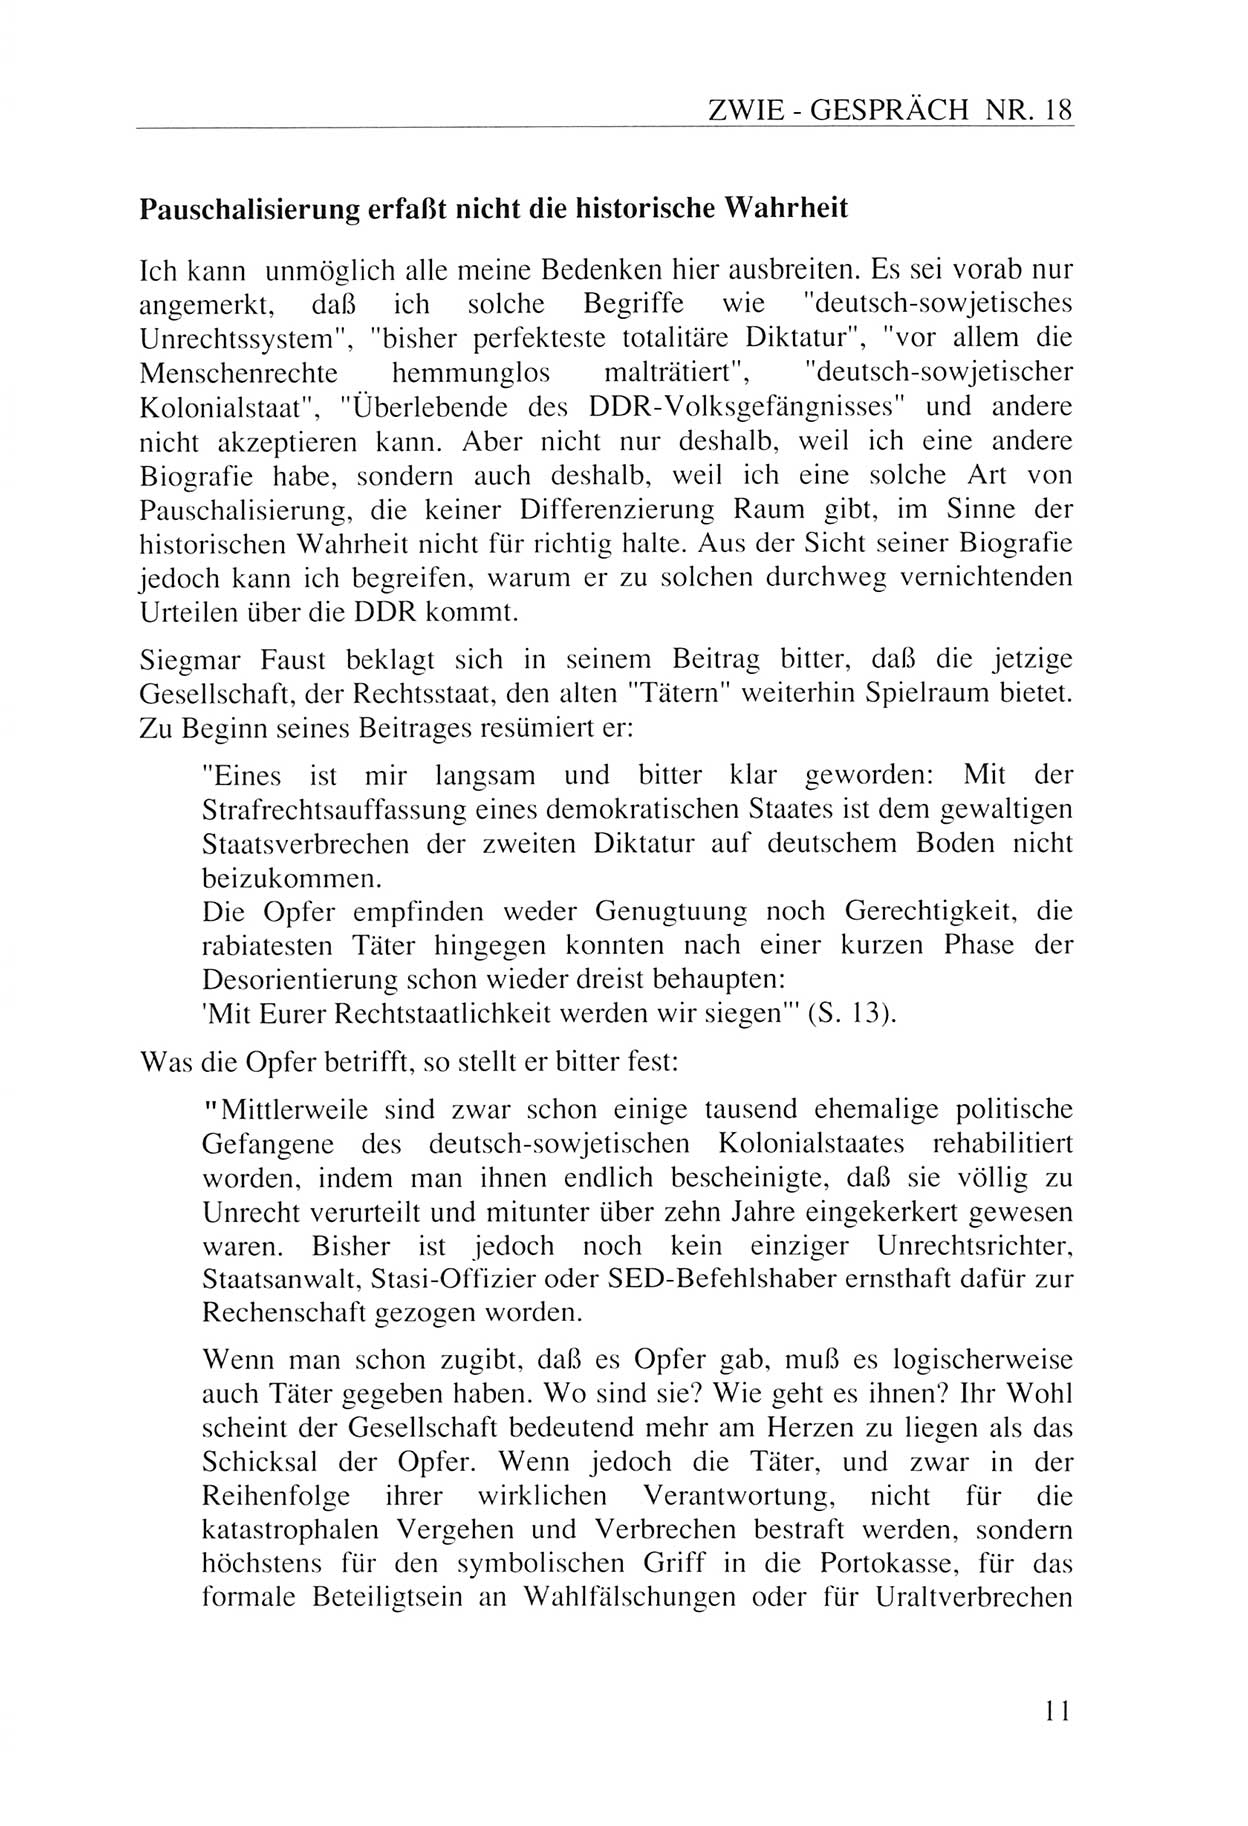 Zwie-Gespräch, Beiträge zur Aufarbeitung der Staatssicherheits-Vergangenheit [Deutsche Demokratische Republik (DDR)], Ausgabe Nr. 18, Berlin 1993, Seite 11 (Zwie-Gespr. Ausg. 18 1993, S. 11)